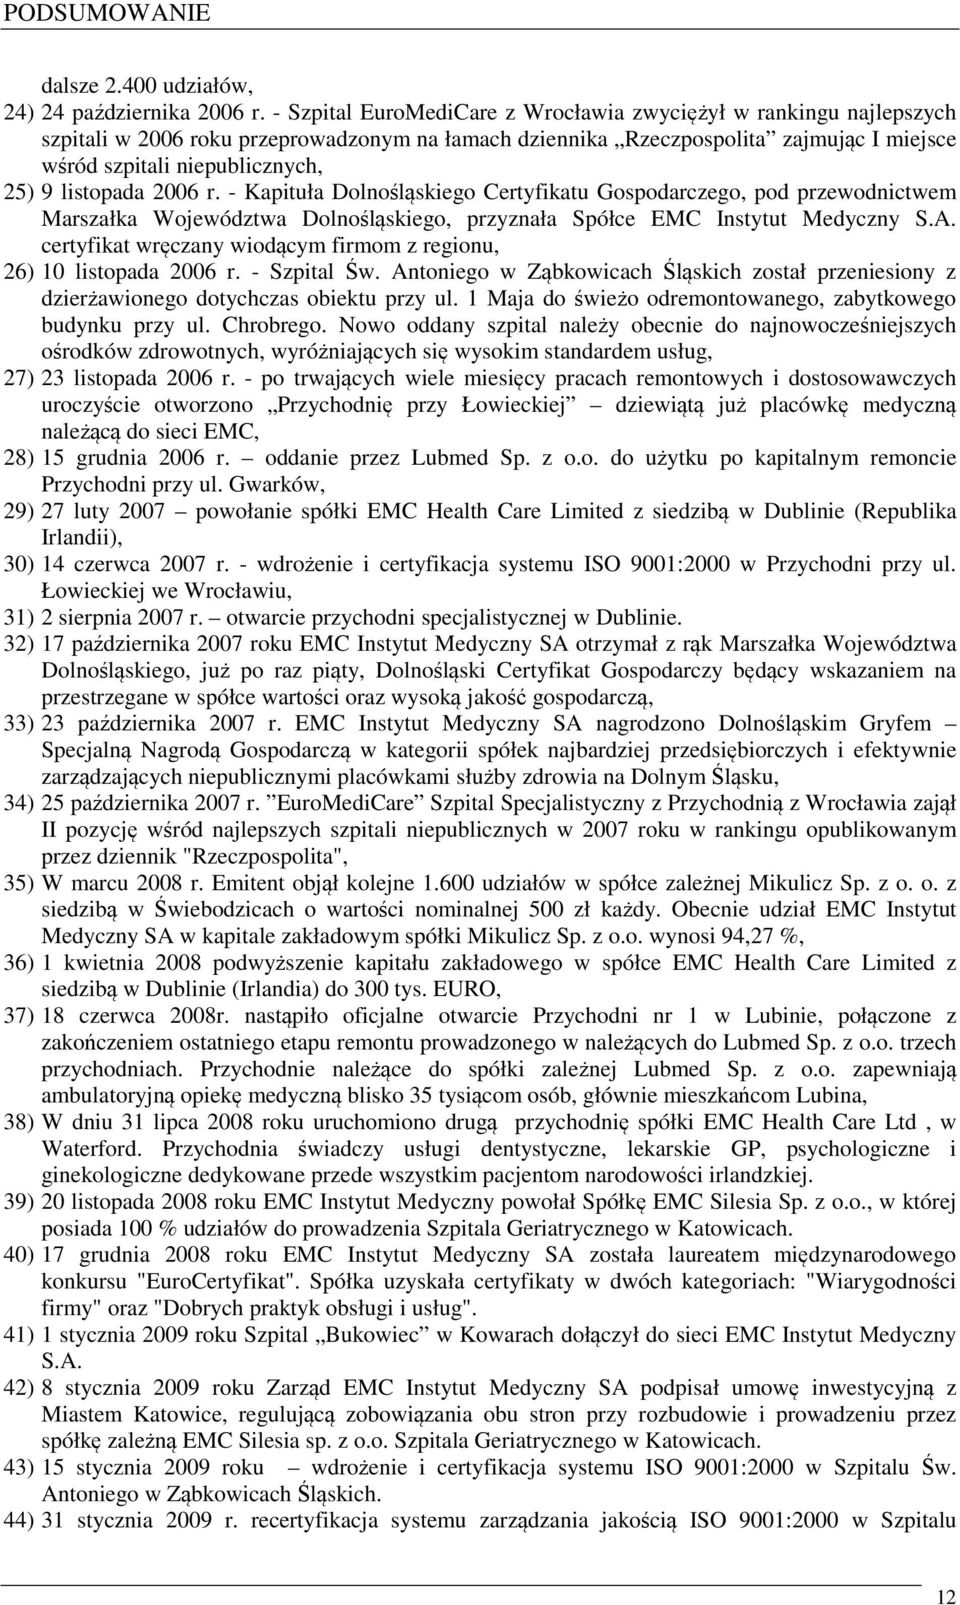 listopada 2006 r. - Kapituła Dolnośląskiego Certyfikatu Gospodarczego, pod przewodnictwem Marszałka Województwa Dolnośląskiego, przyznała Spółce EMC Instytut Medyczny S.A.